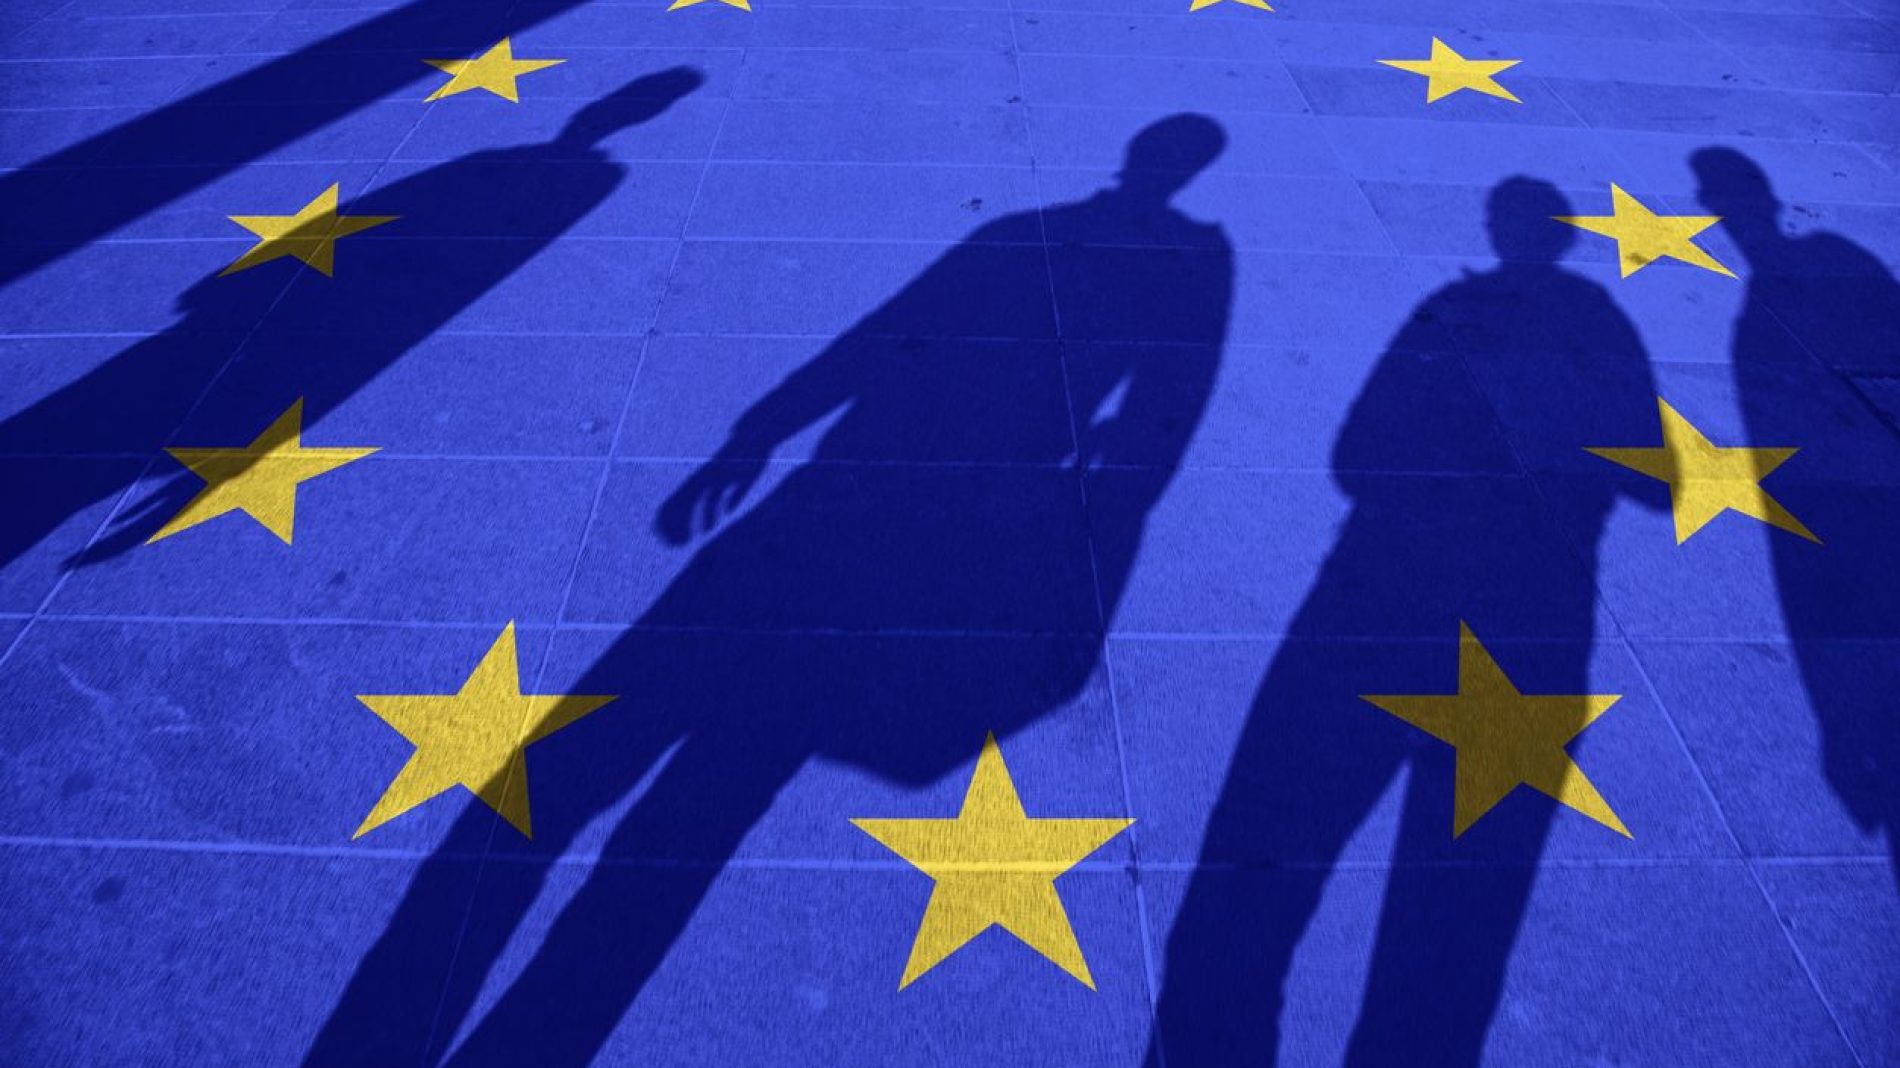 Shadows standing over the EU flag